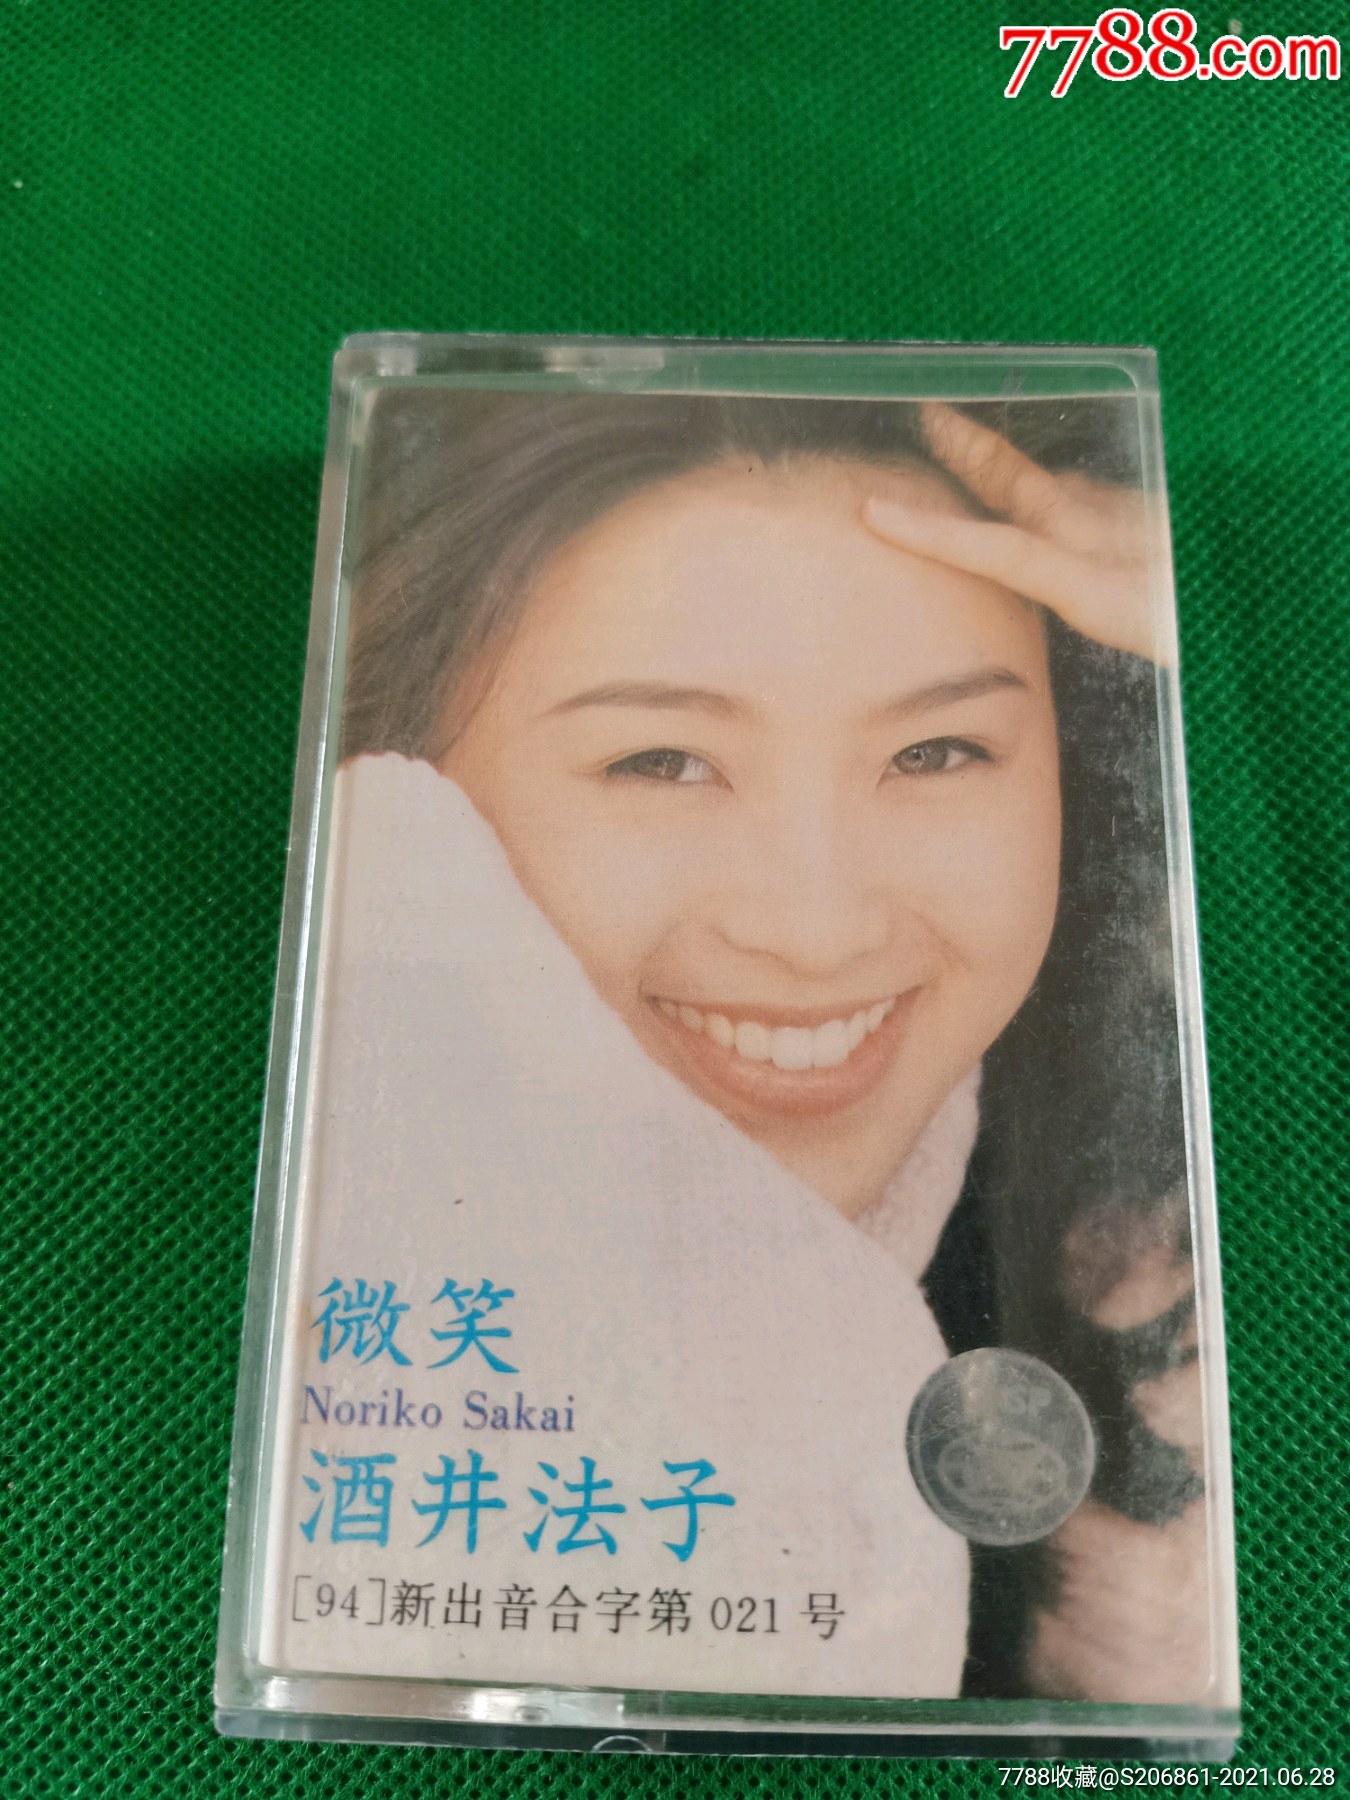 酒井法子微笑磁带jvc供版中国音乐家音像出版